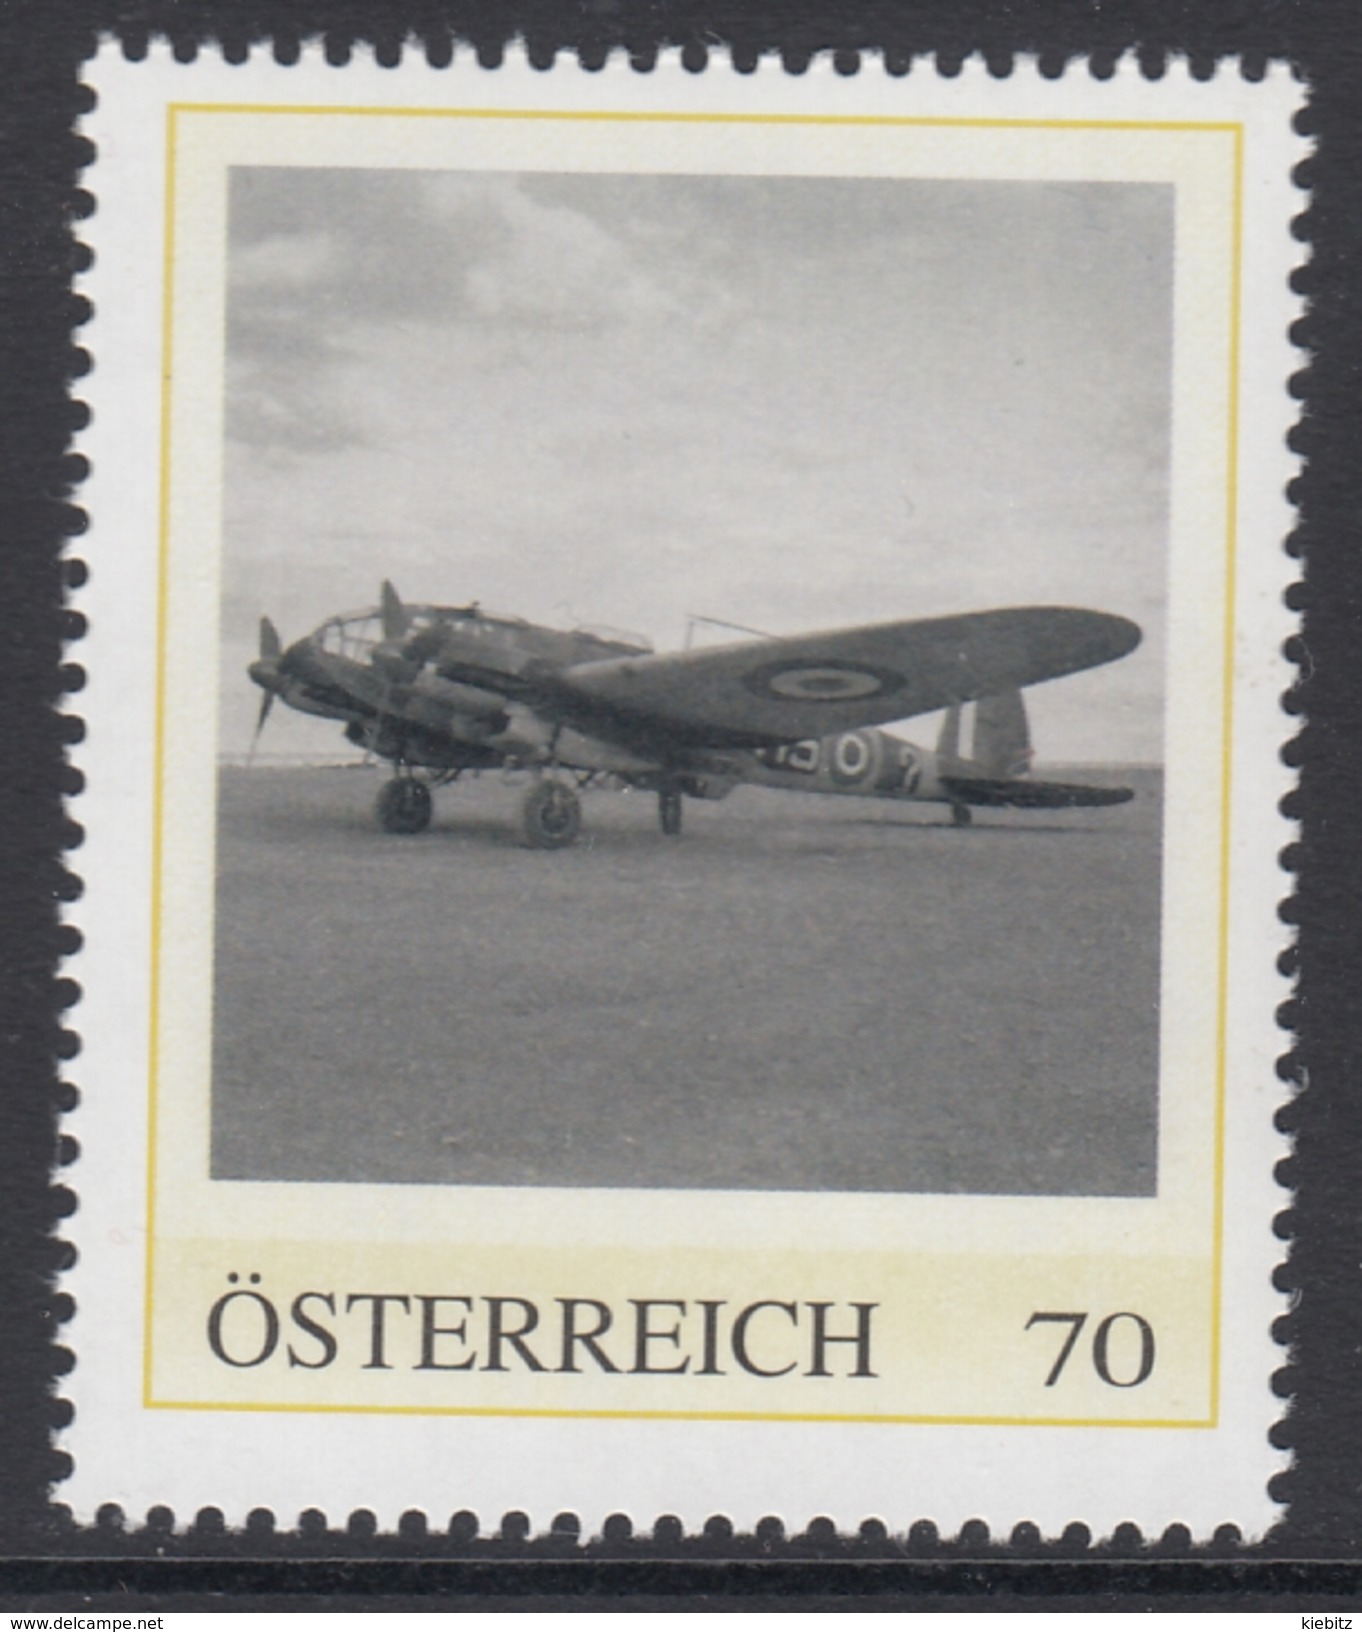 ÖSTERREICH 2016 ** 2. Weltkrieg - Heinkel He 111, Deutsches Kampfflugzeug - PM Personalized Stamps MNH - 2. Weltkrieg